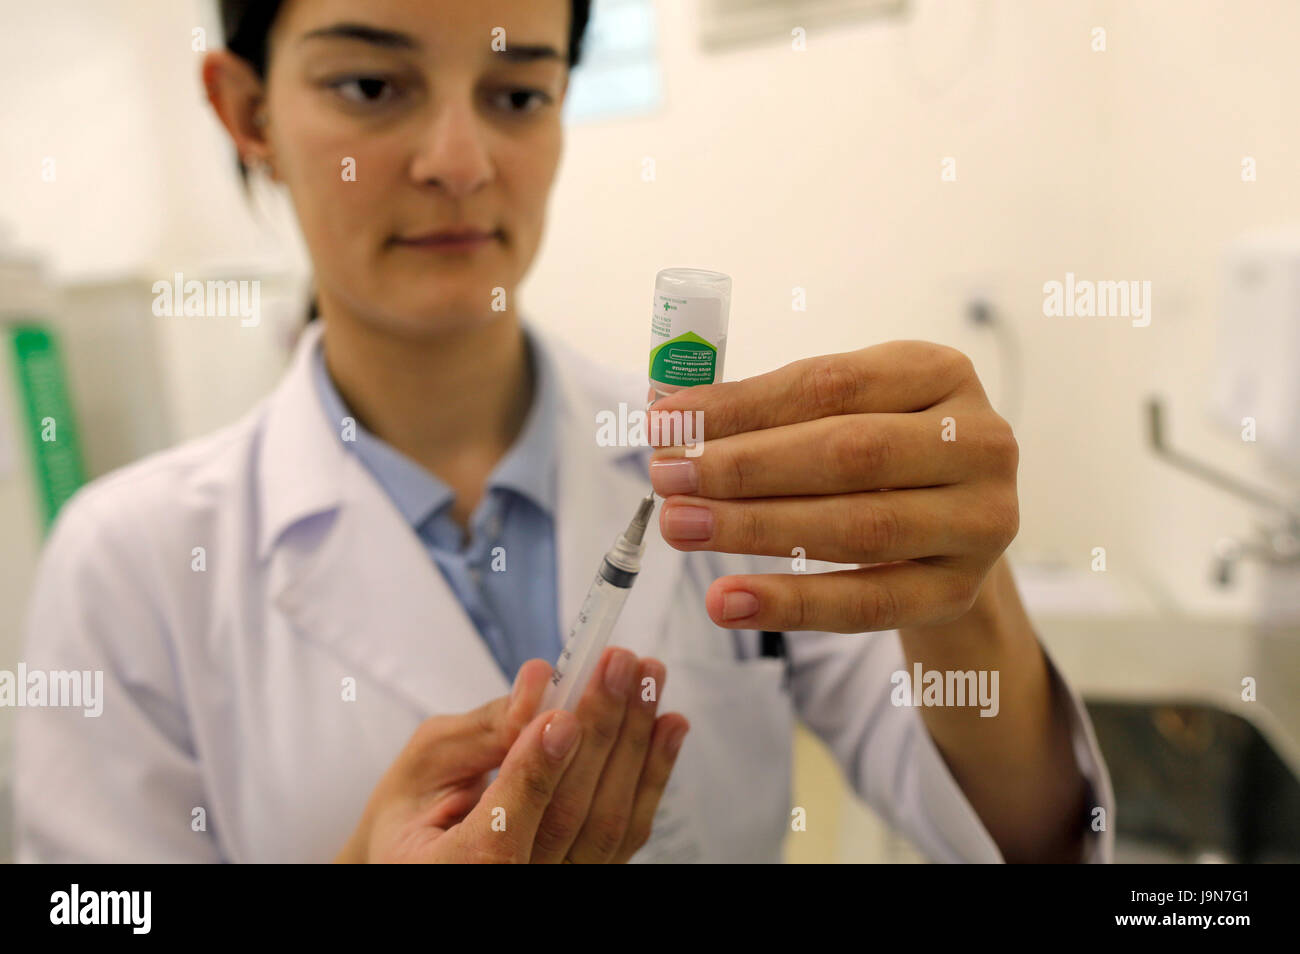 Infirmière la préparation d'une dose de vaccin contre la grippe - Grippe, dans un bureau de santé publique de São Paulo - Brésil - Amérique du Sud Banque D'Images